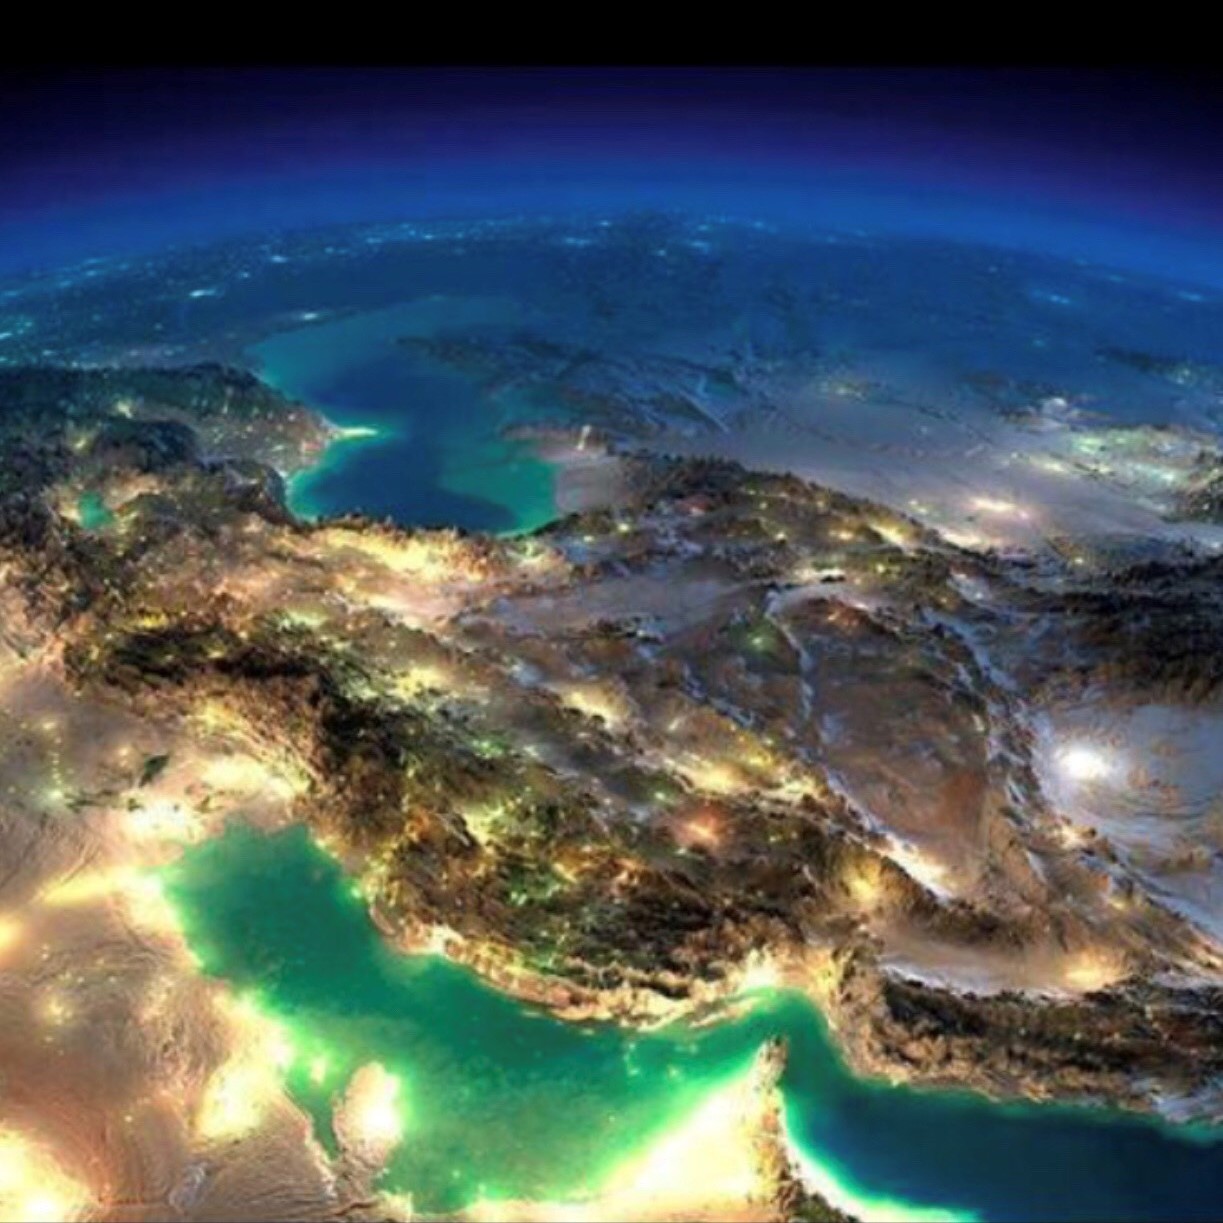 NASA satellite image of the Iranian Plateau: Night